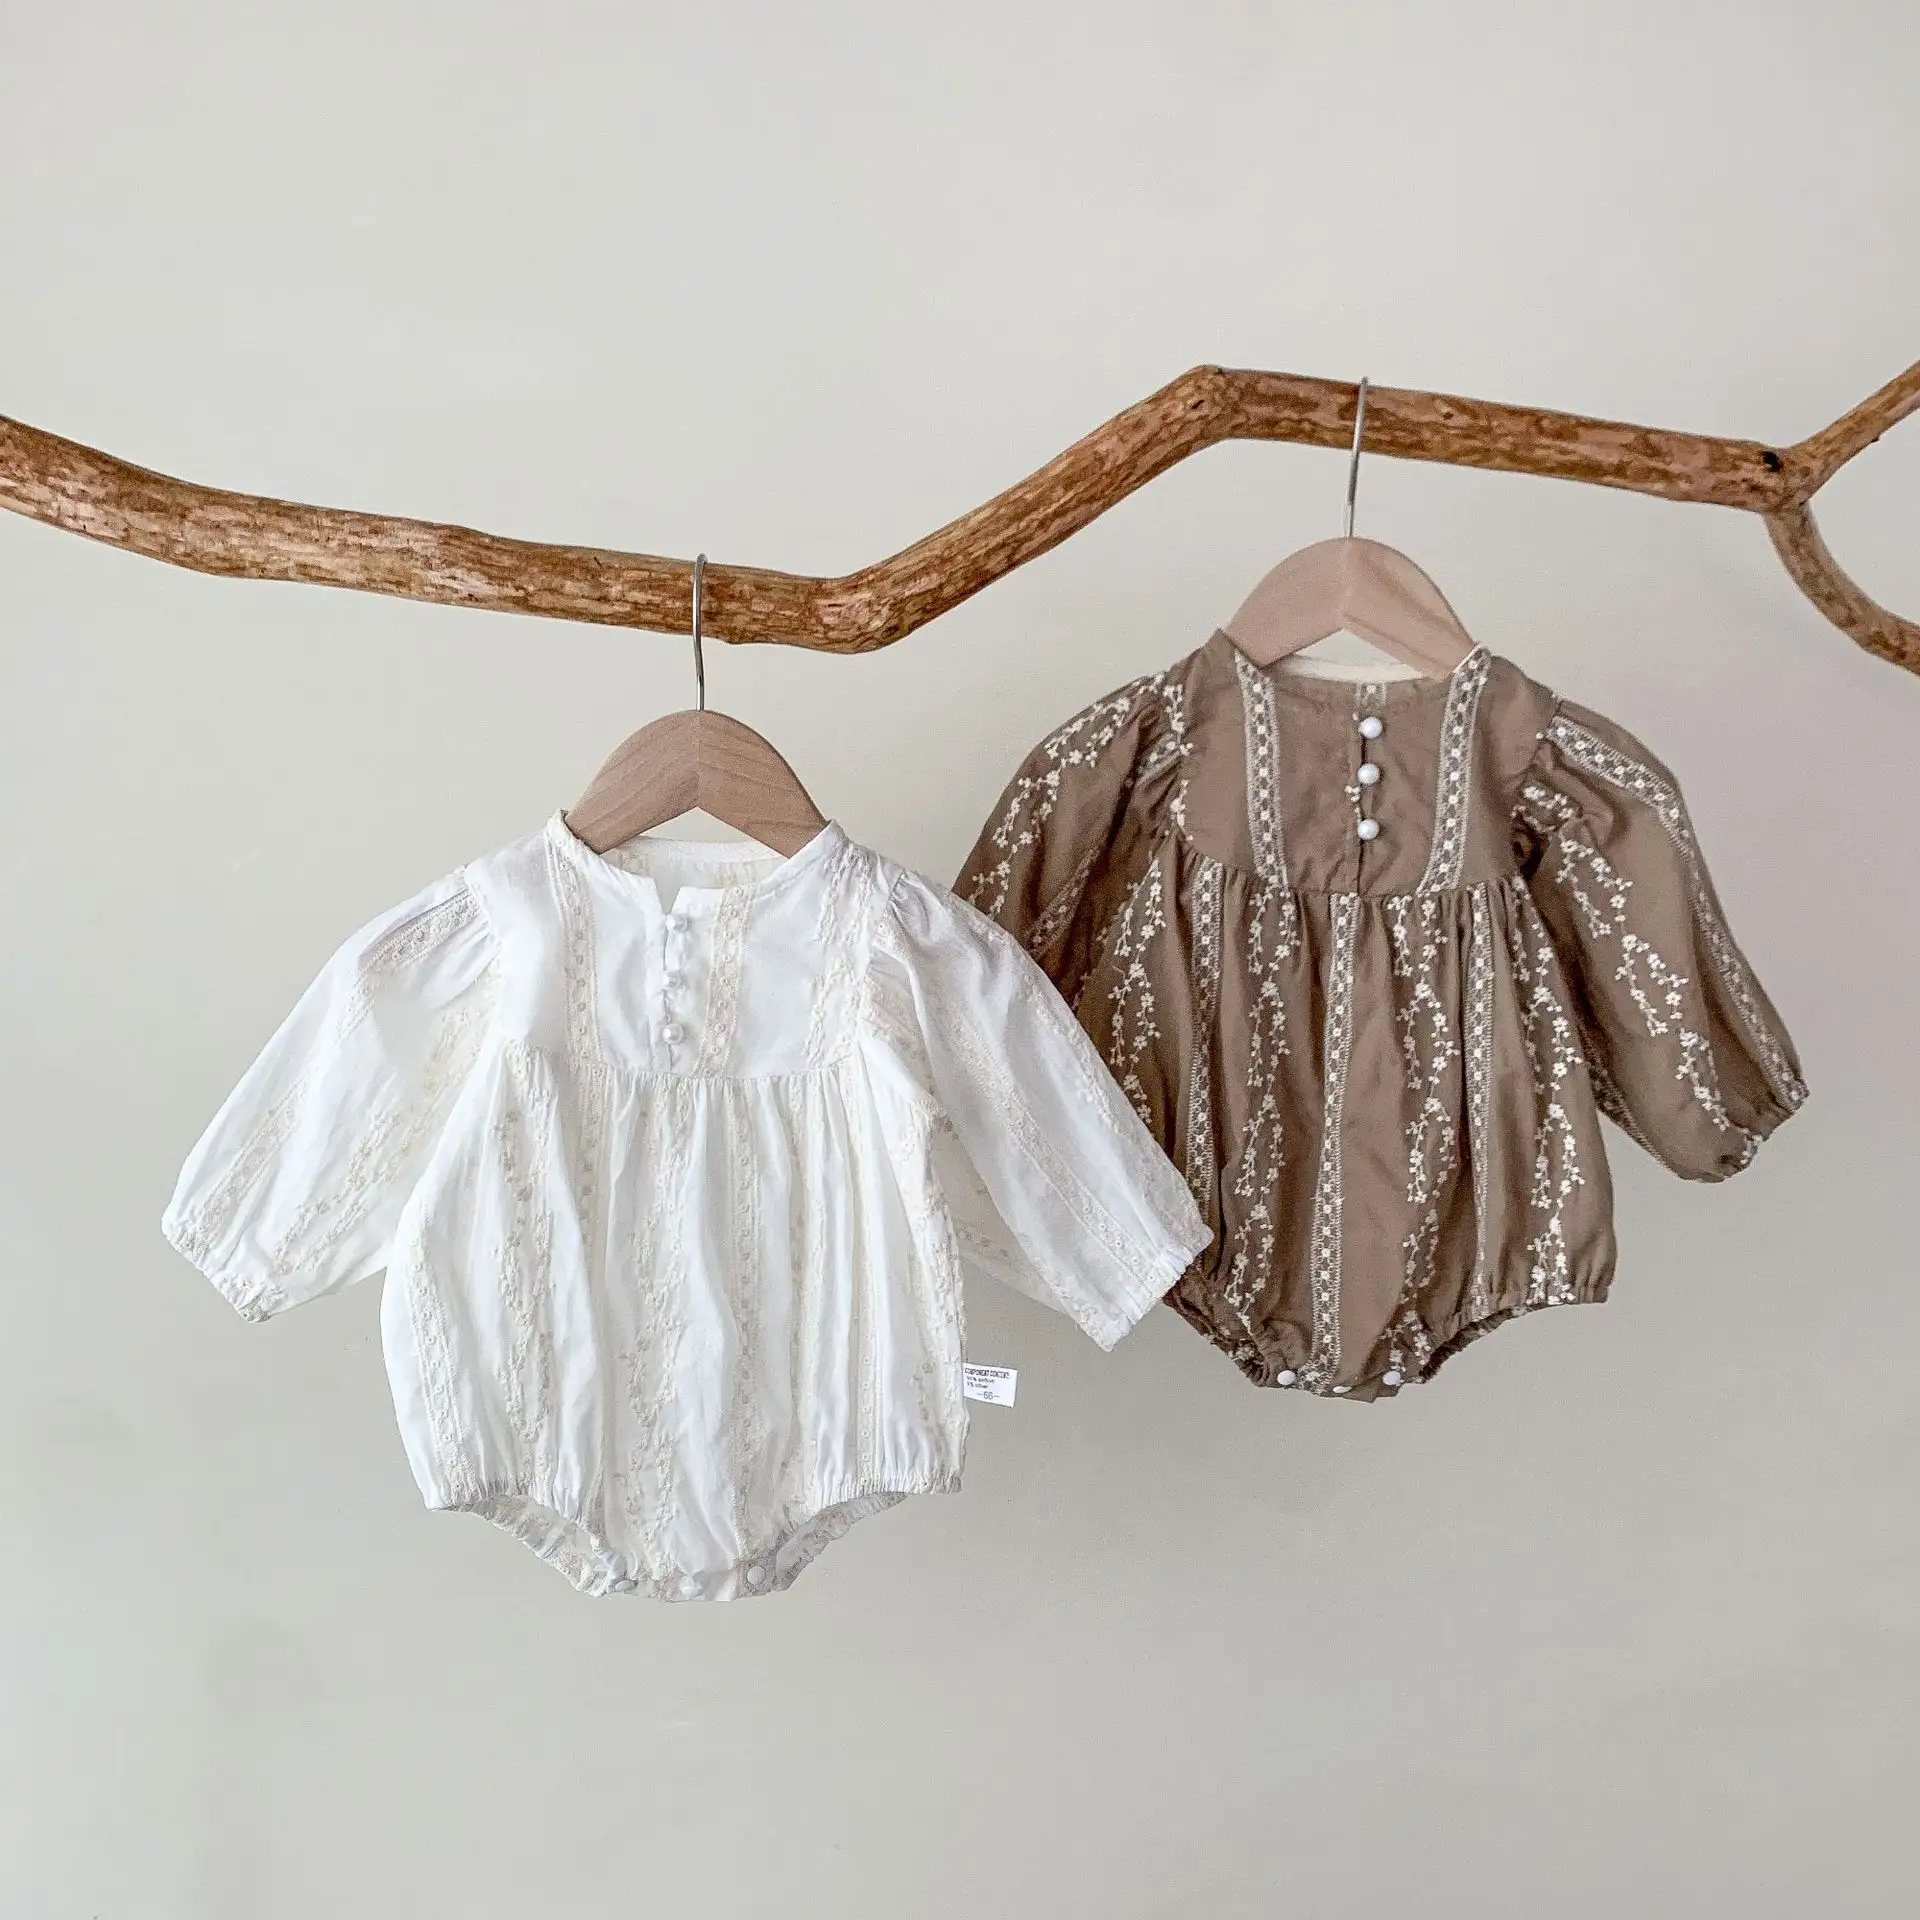 Vestiti della neonata pizzo avorio cotone organico volant neonata pagliaccetto tutina neonata tuta intera floreale